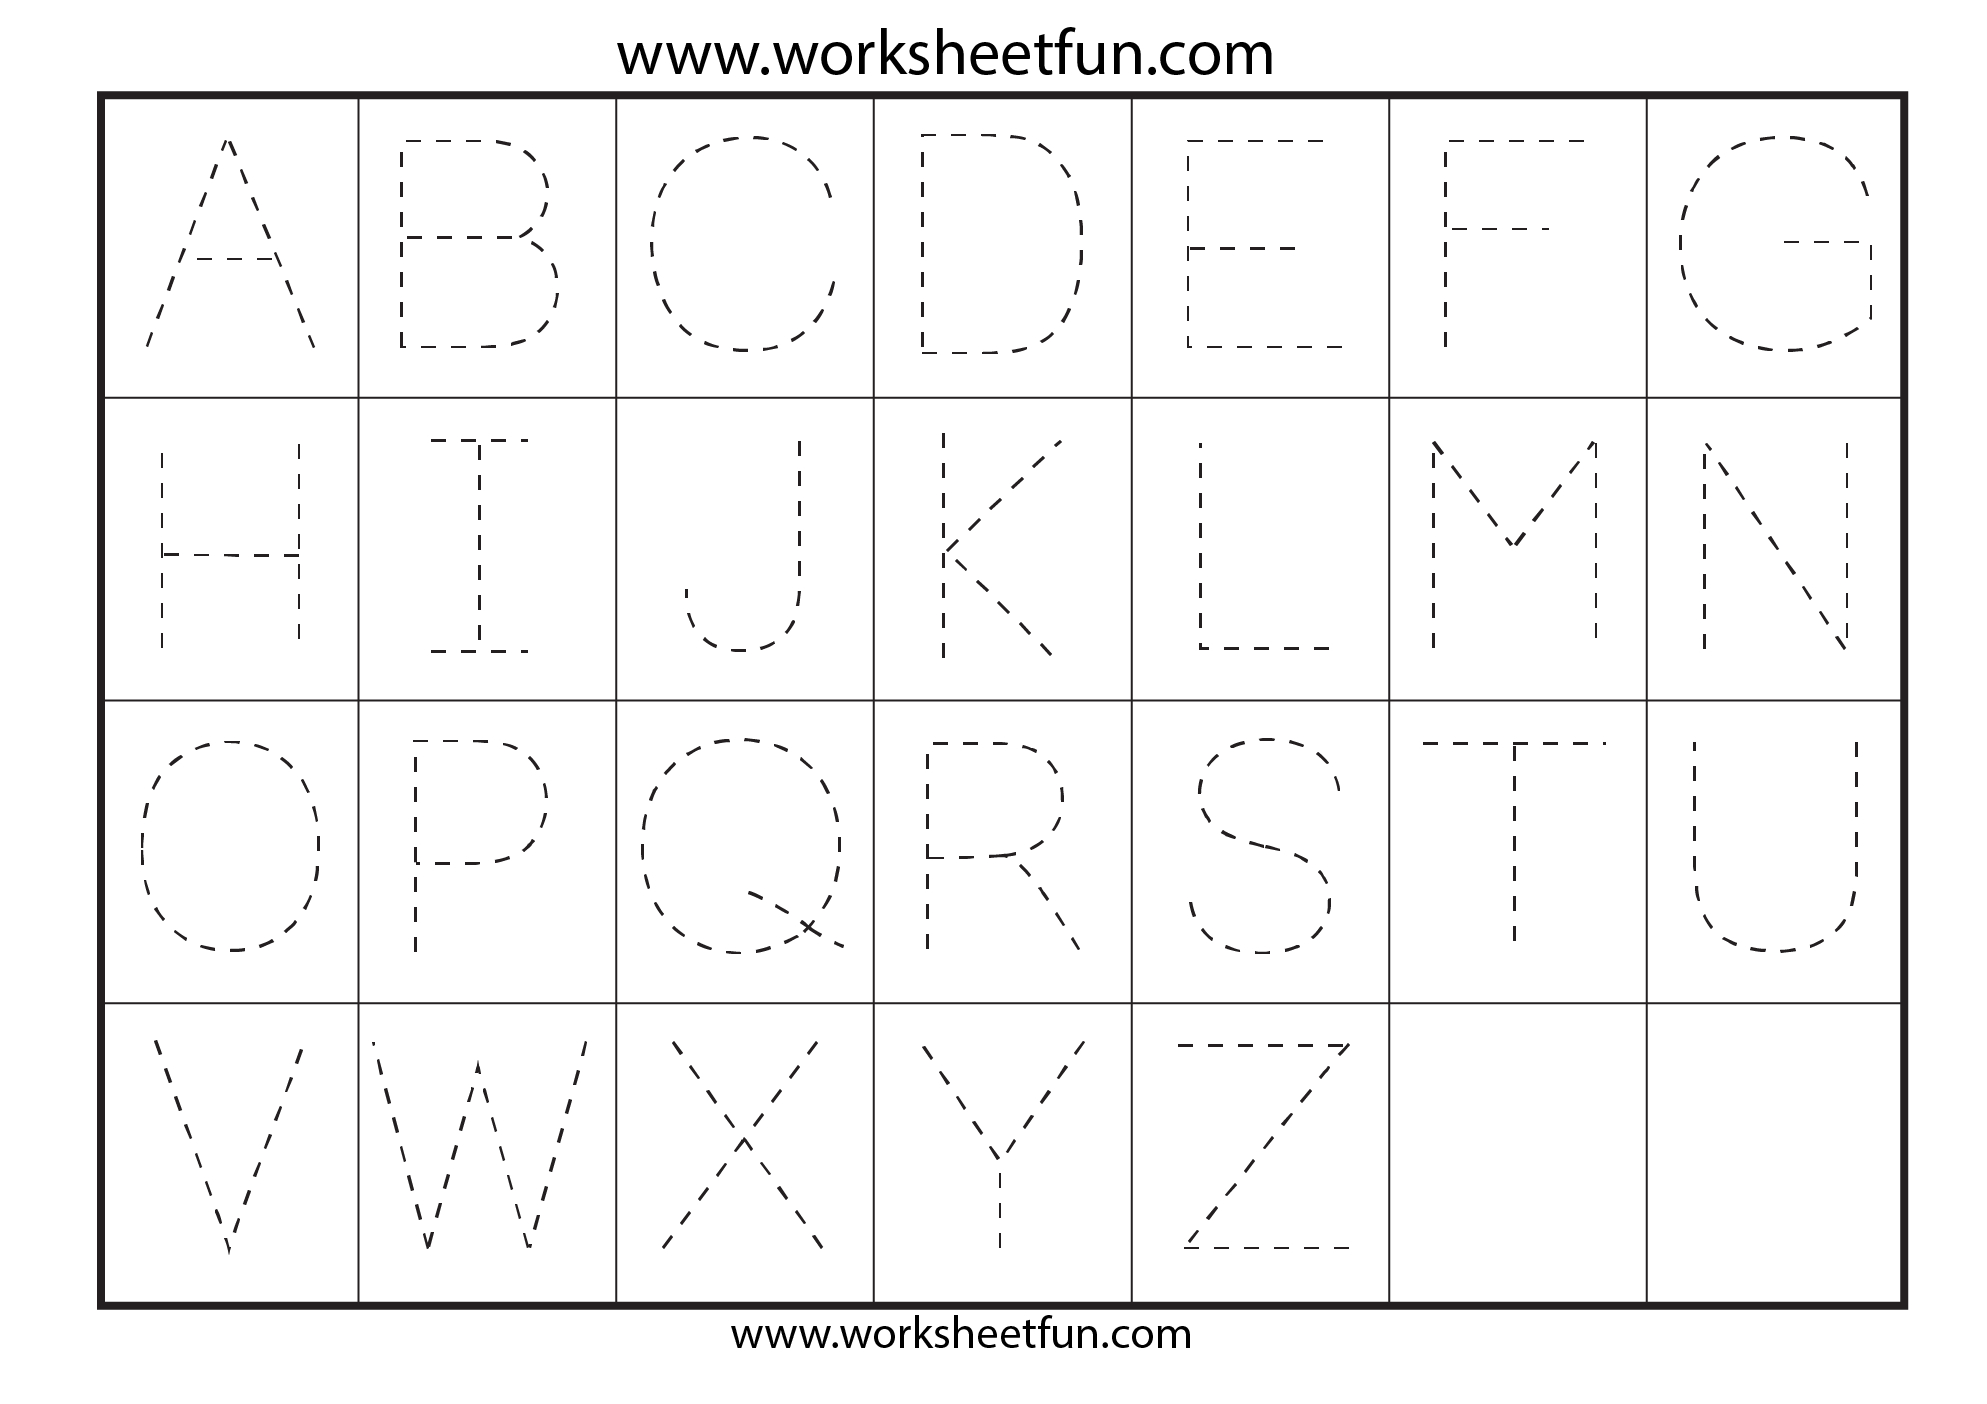 Letter Tracing Worksheets For Kindergarten - Capital Letters | Capital Alphabets Tracing Worksheets Printable